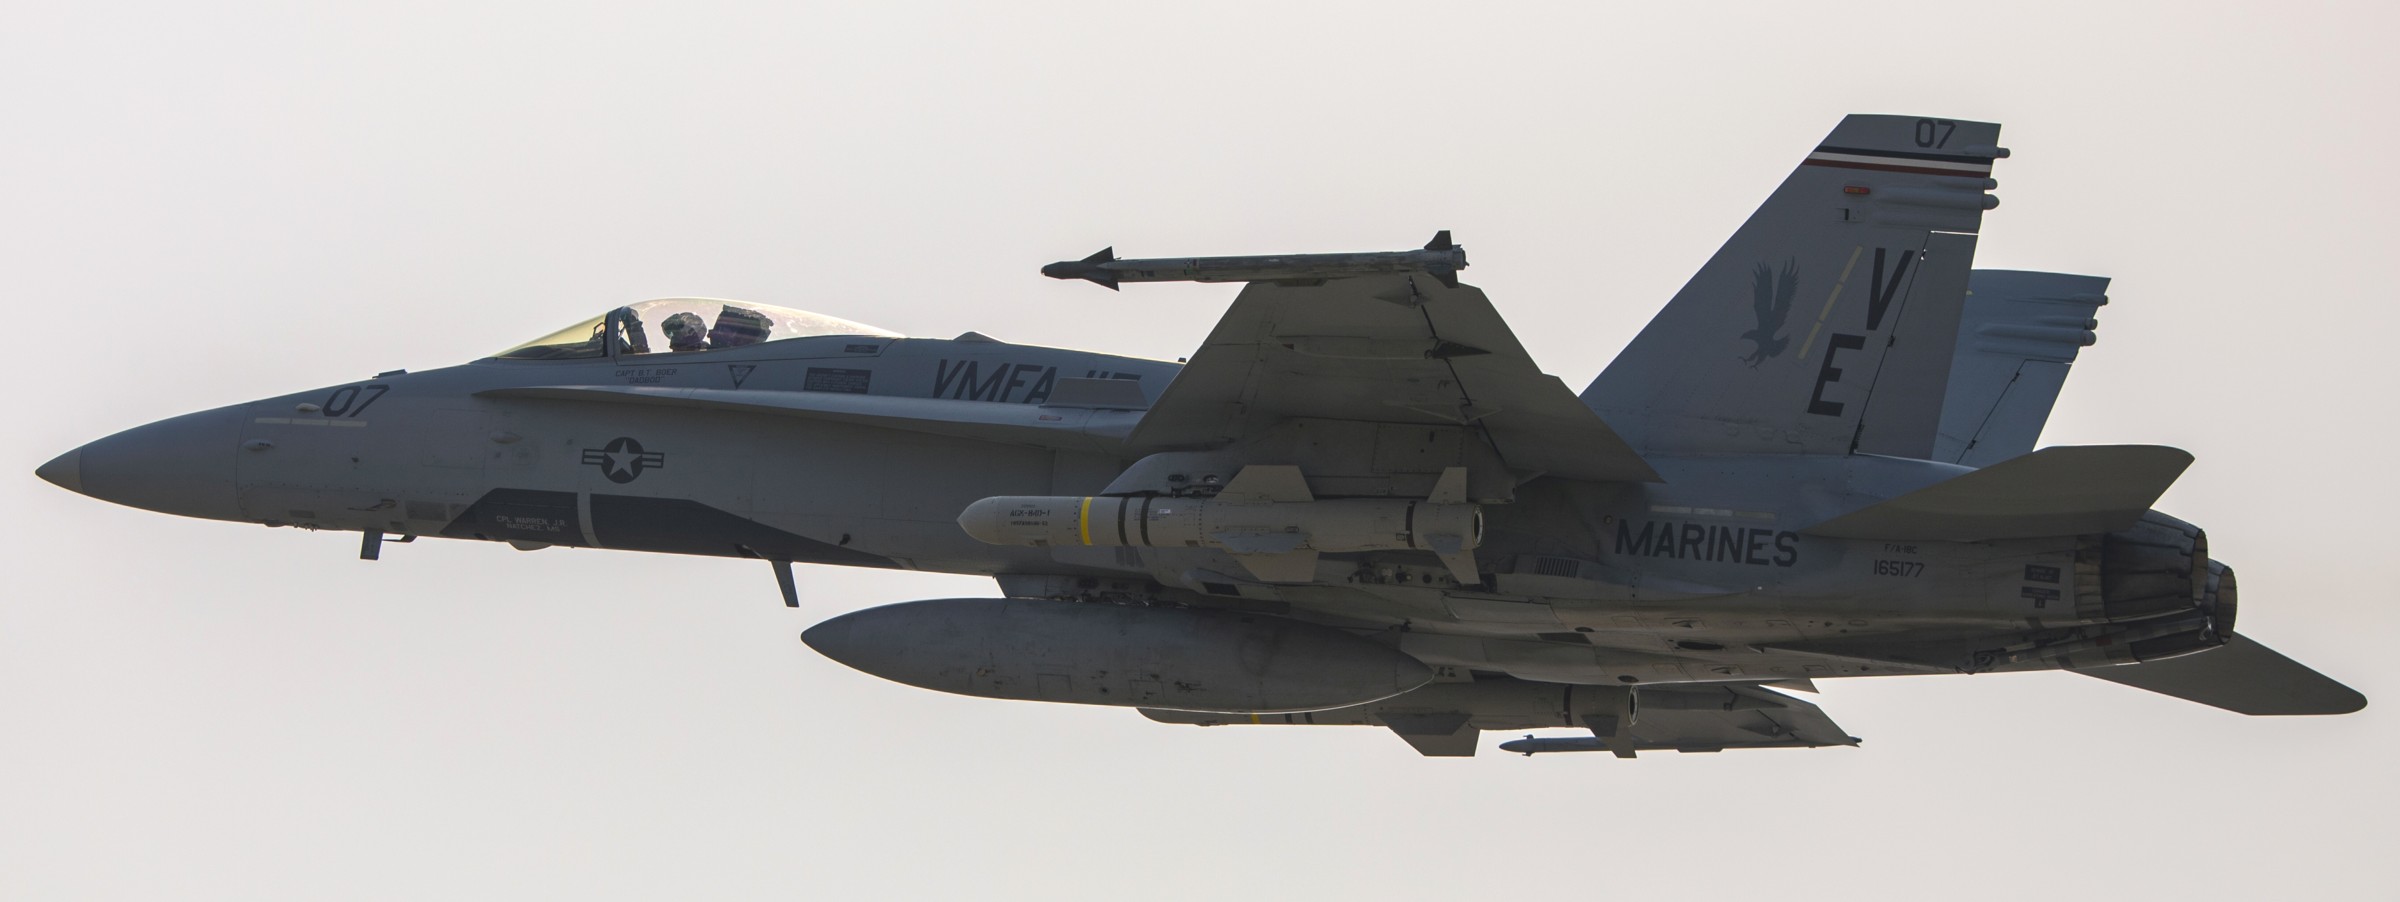 vmfa-115 silver eagles marine fighter attack squadron usmc f/a-18c hornet 194